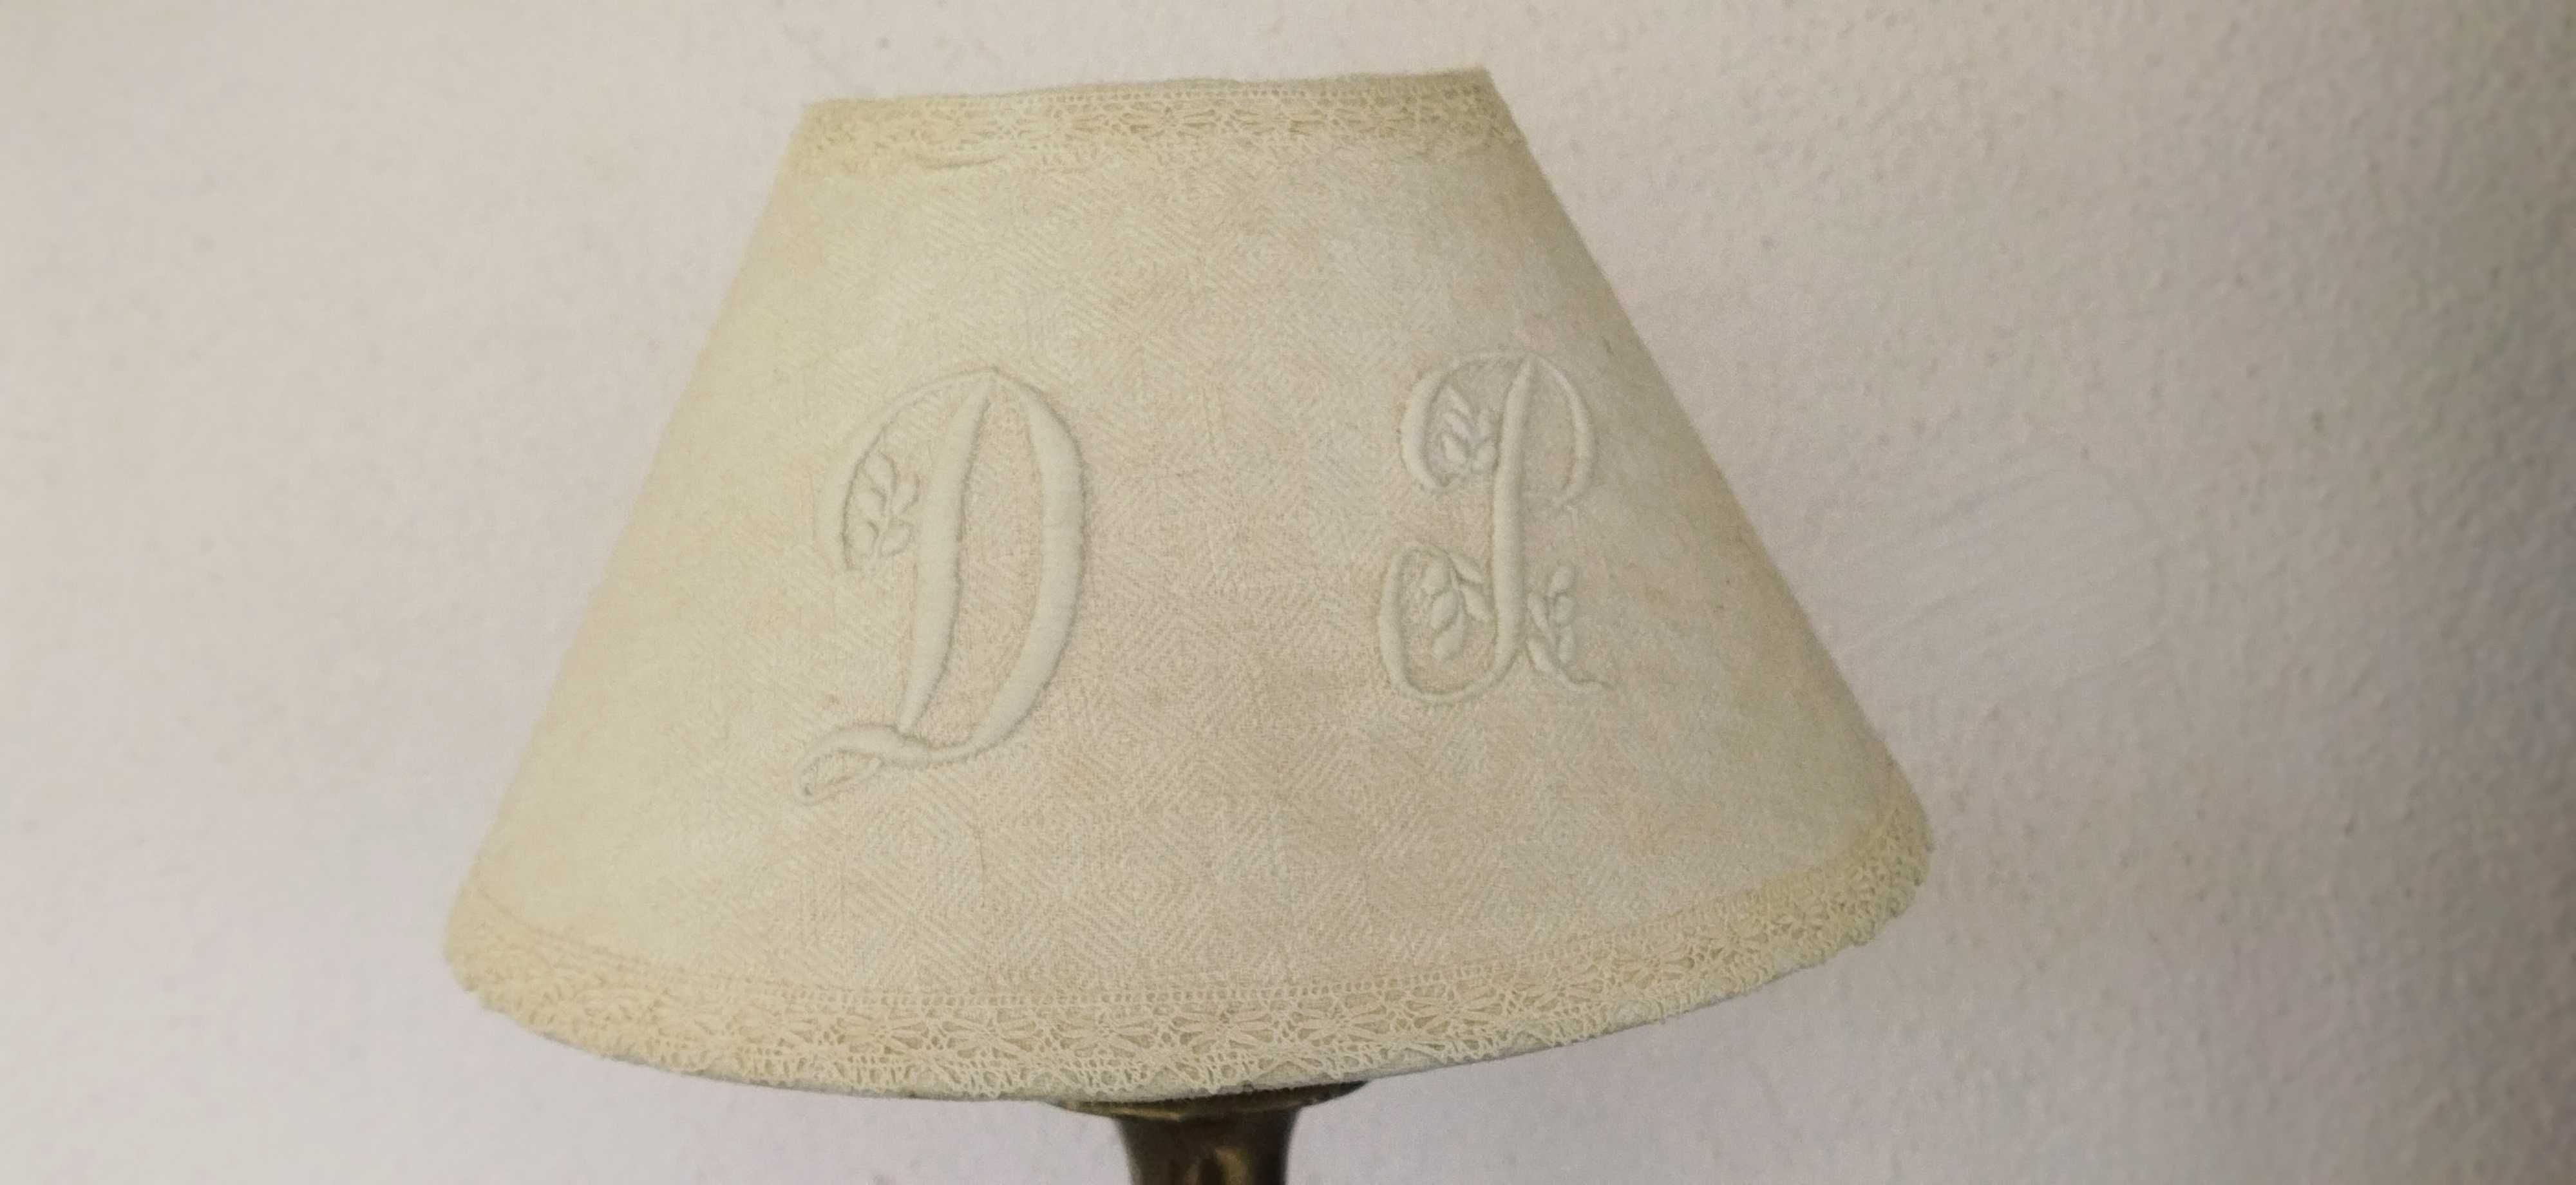 Лампа бронзовая.Абажур тканевый.42×22 см.Франция